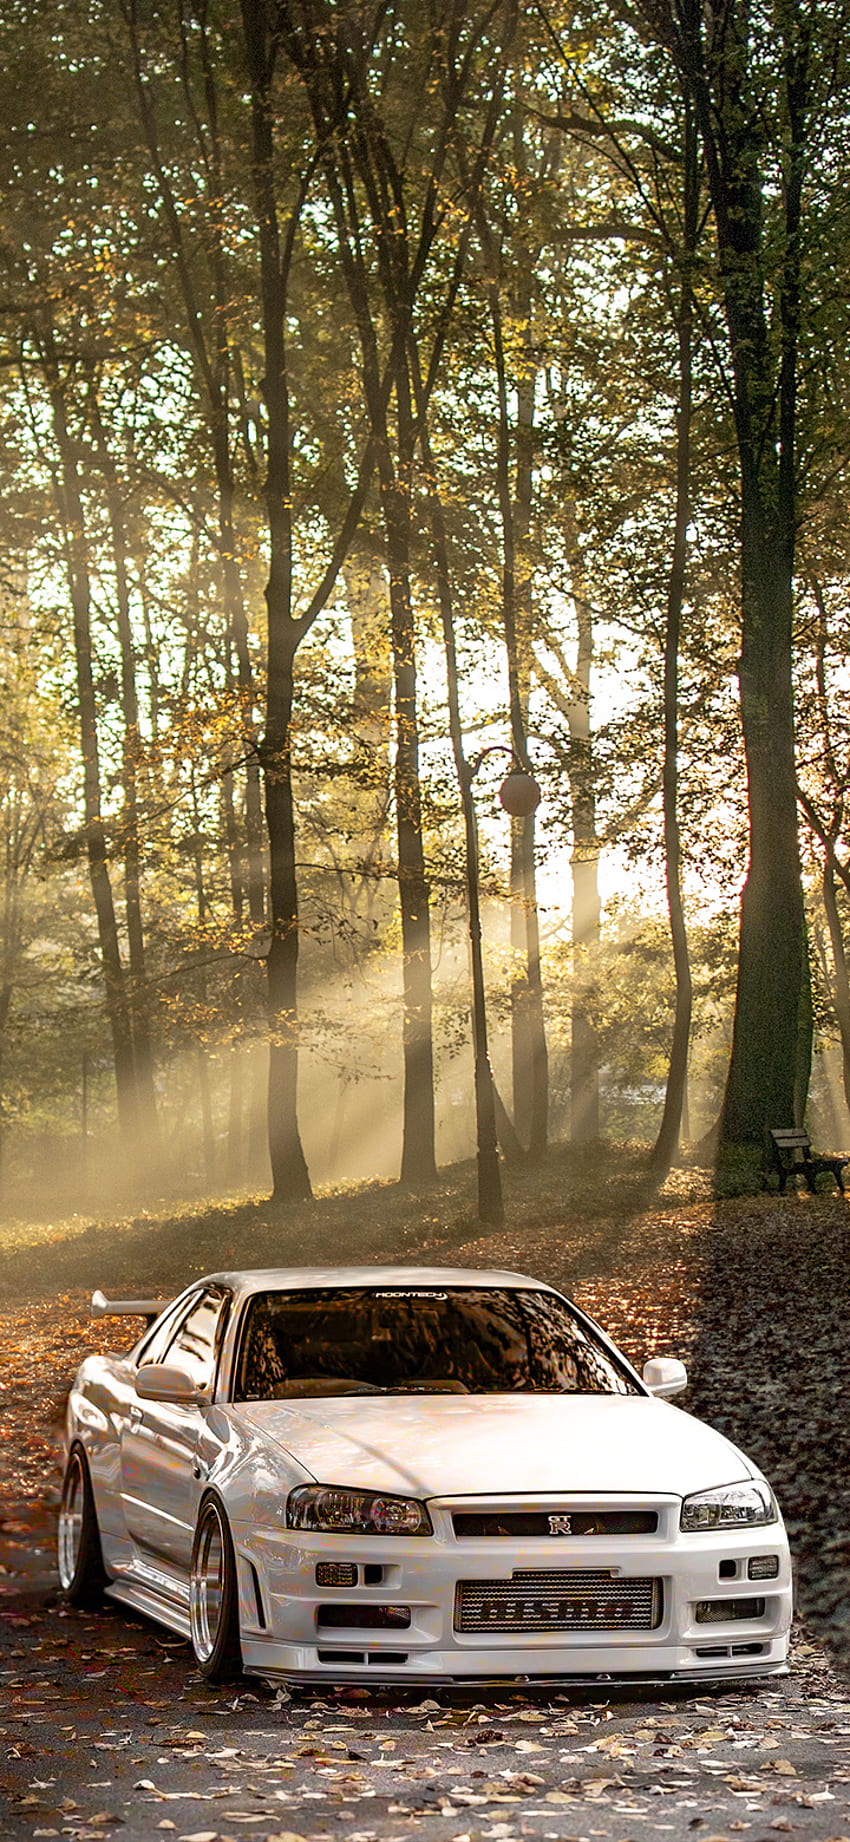 GTR Nissan Skyline R34, Coche, Bosque, Sol fondo de pantalla del teléfono